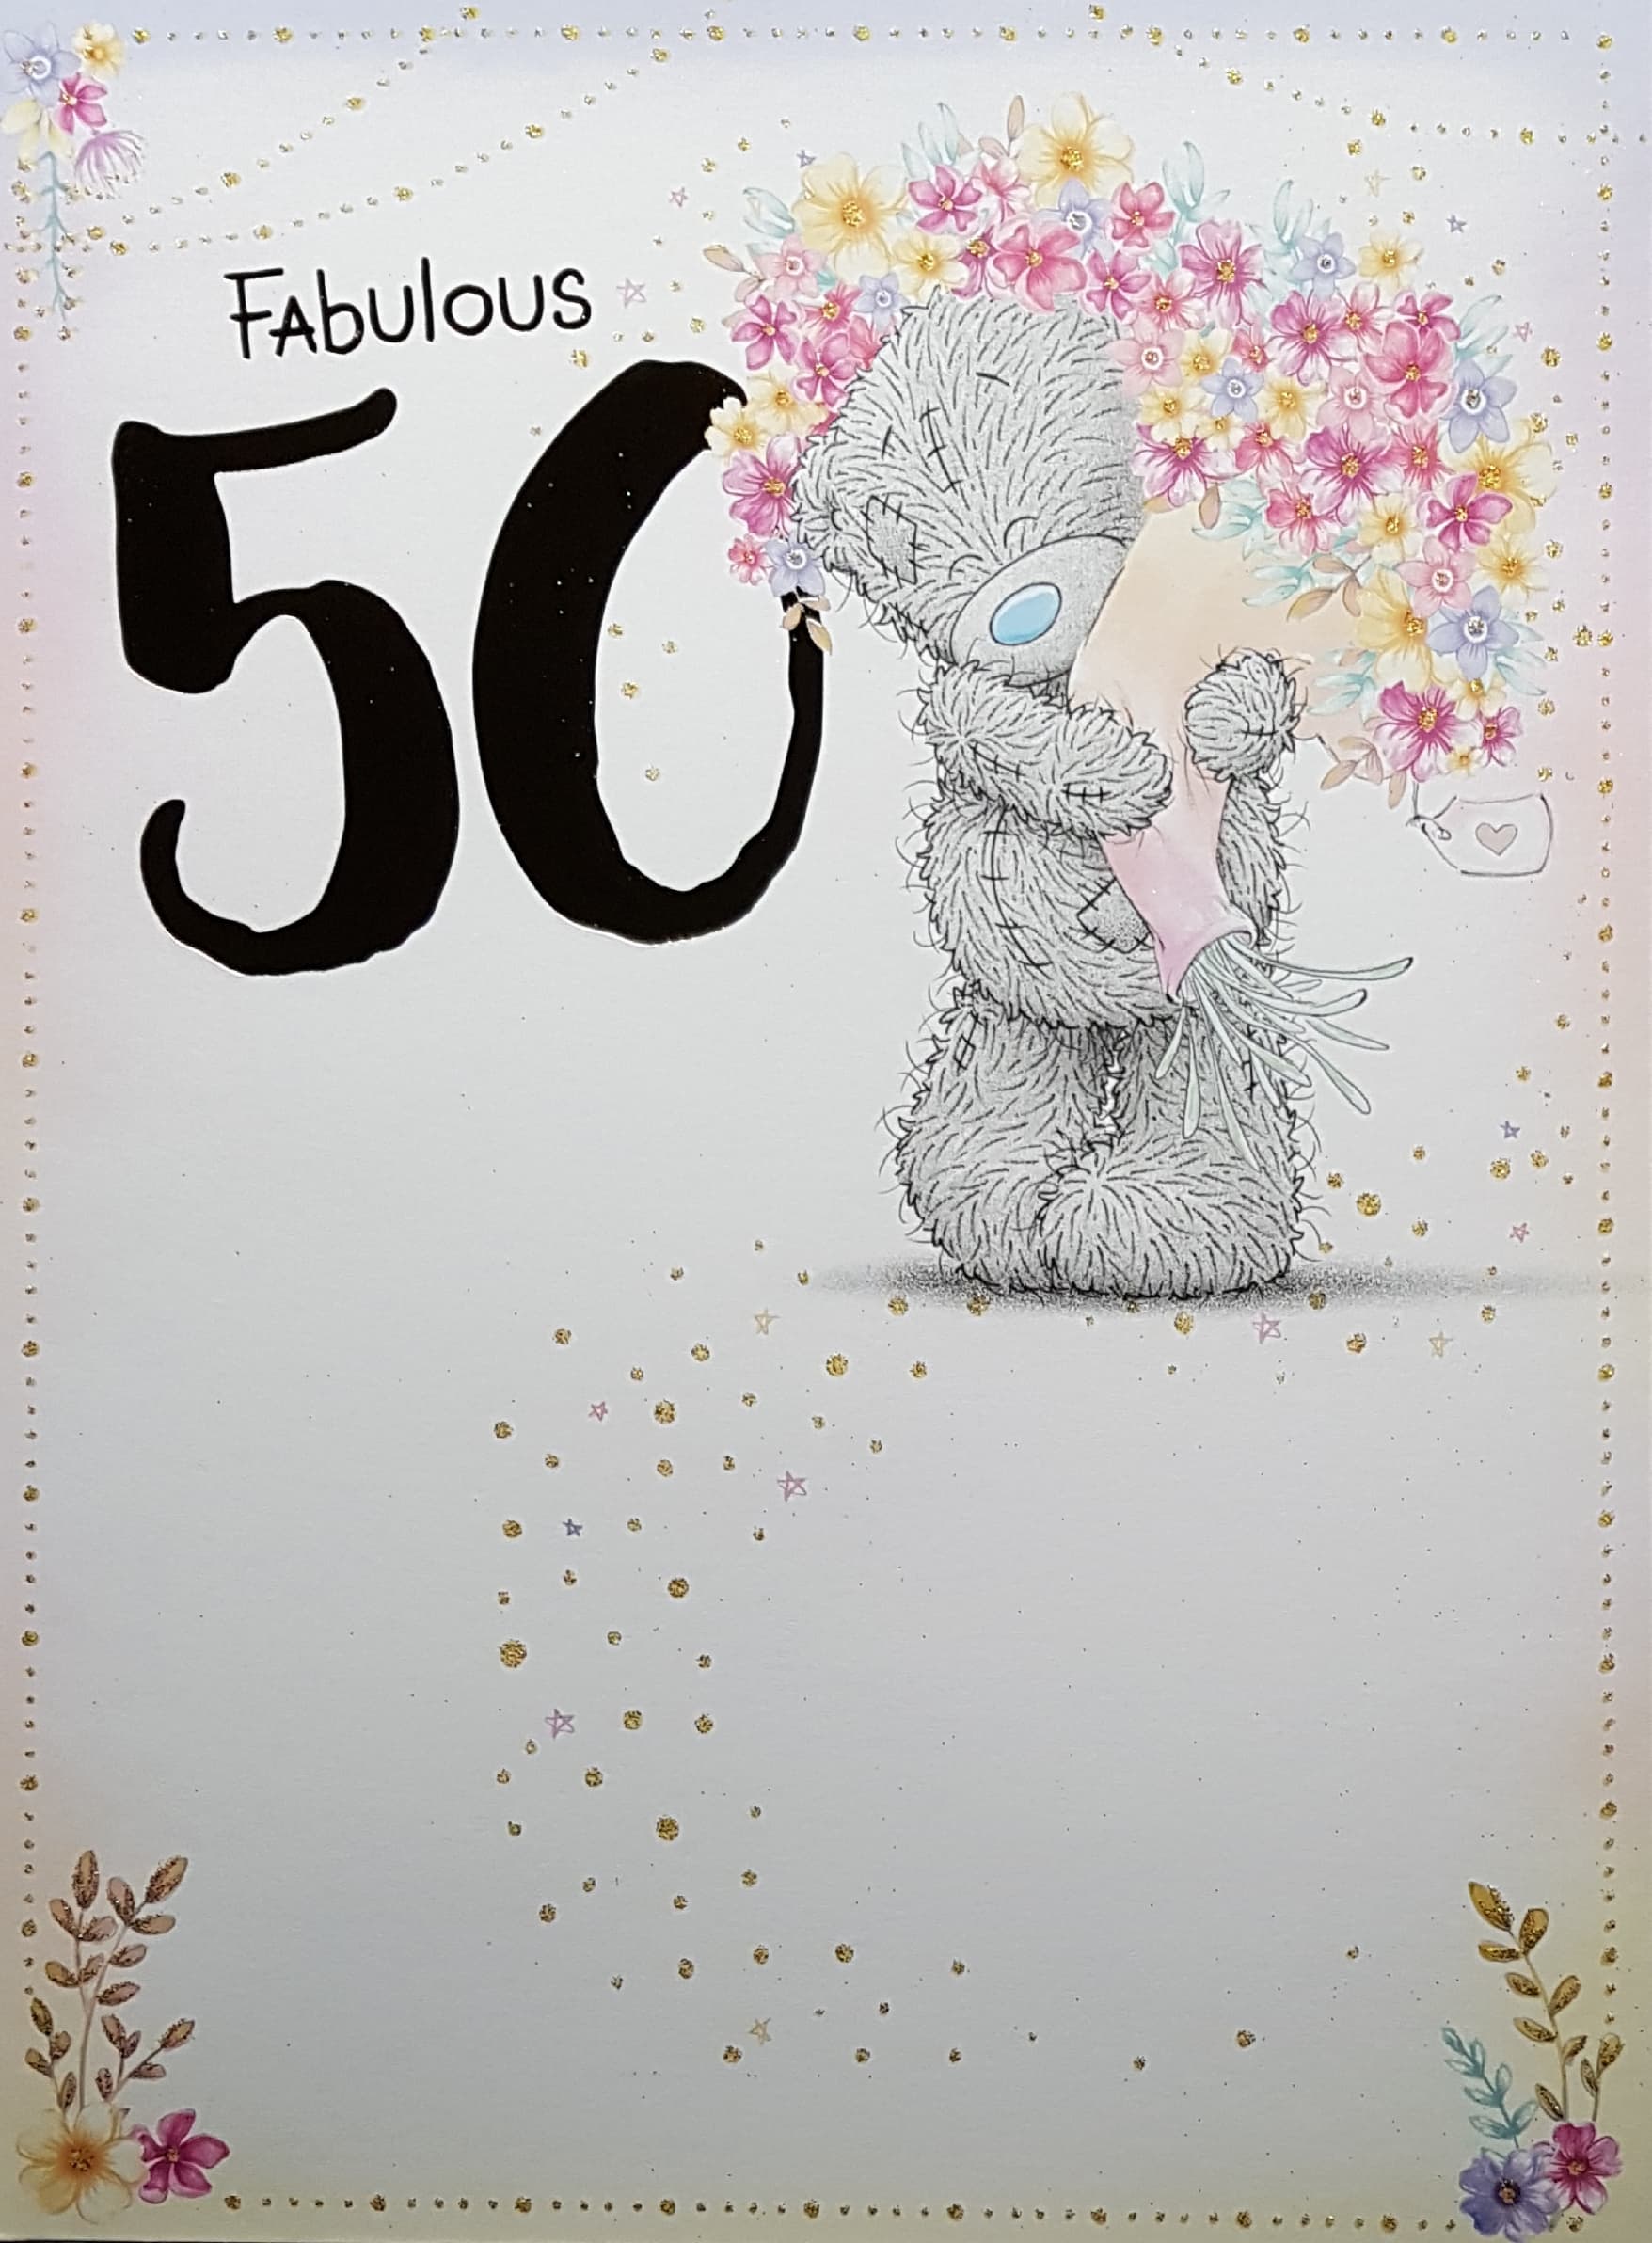 Age 50 Birthday Card - A Cute Teddy Holding A Big Bunch Of Flowers